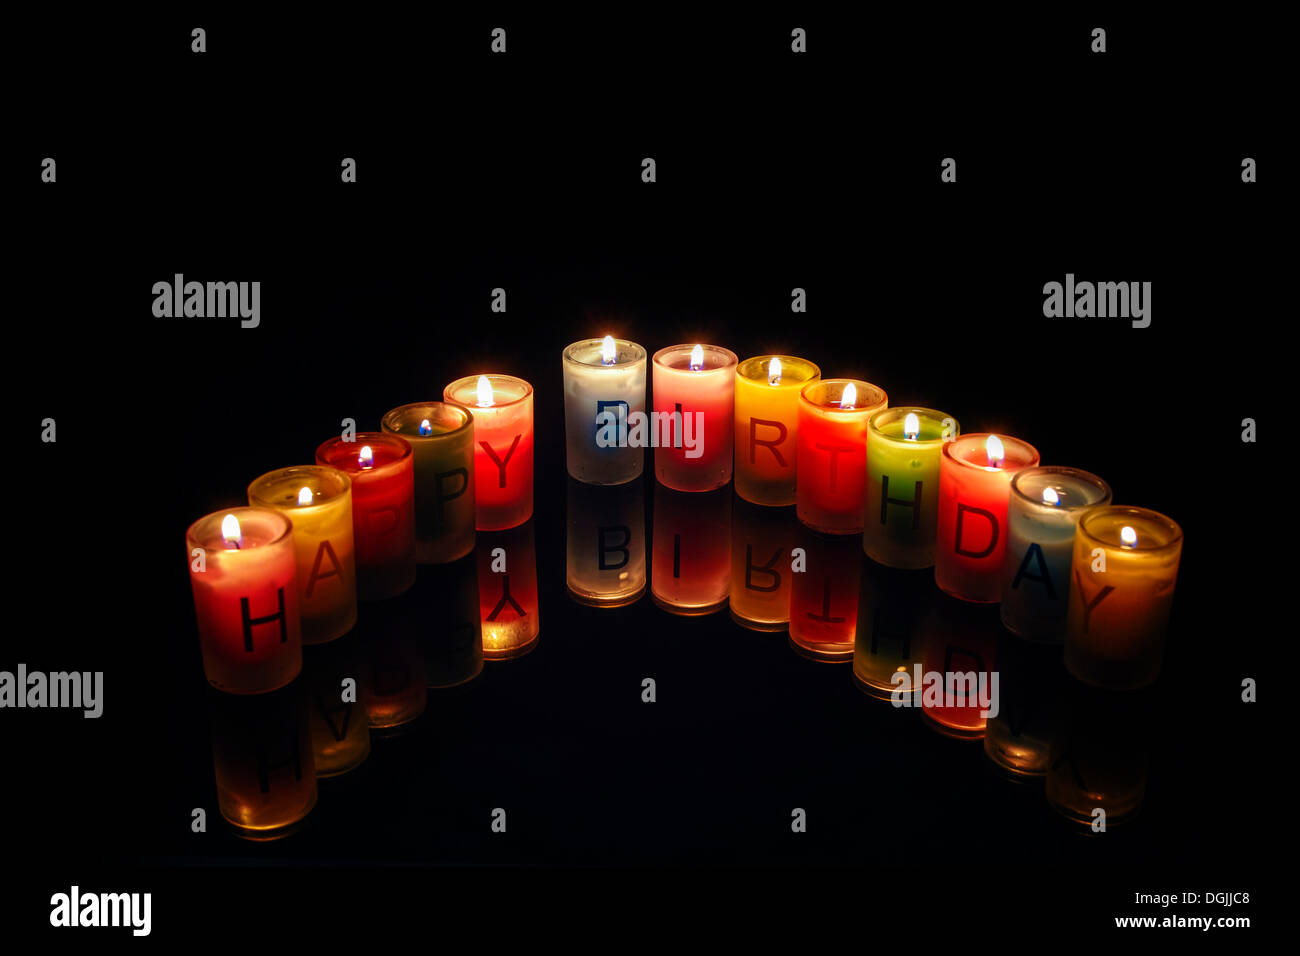 Bougies d'anniversaire avec des lettres formant les mots "Joyeux Anniversaire" Banque D'Images